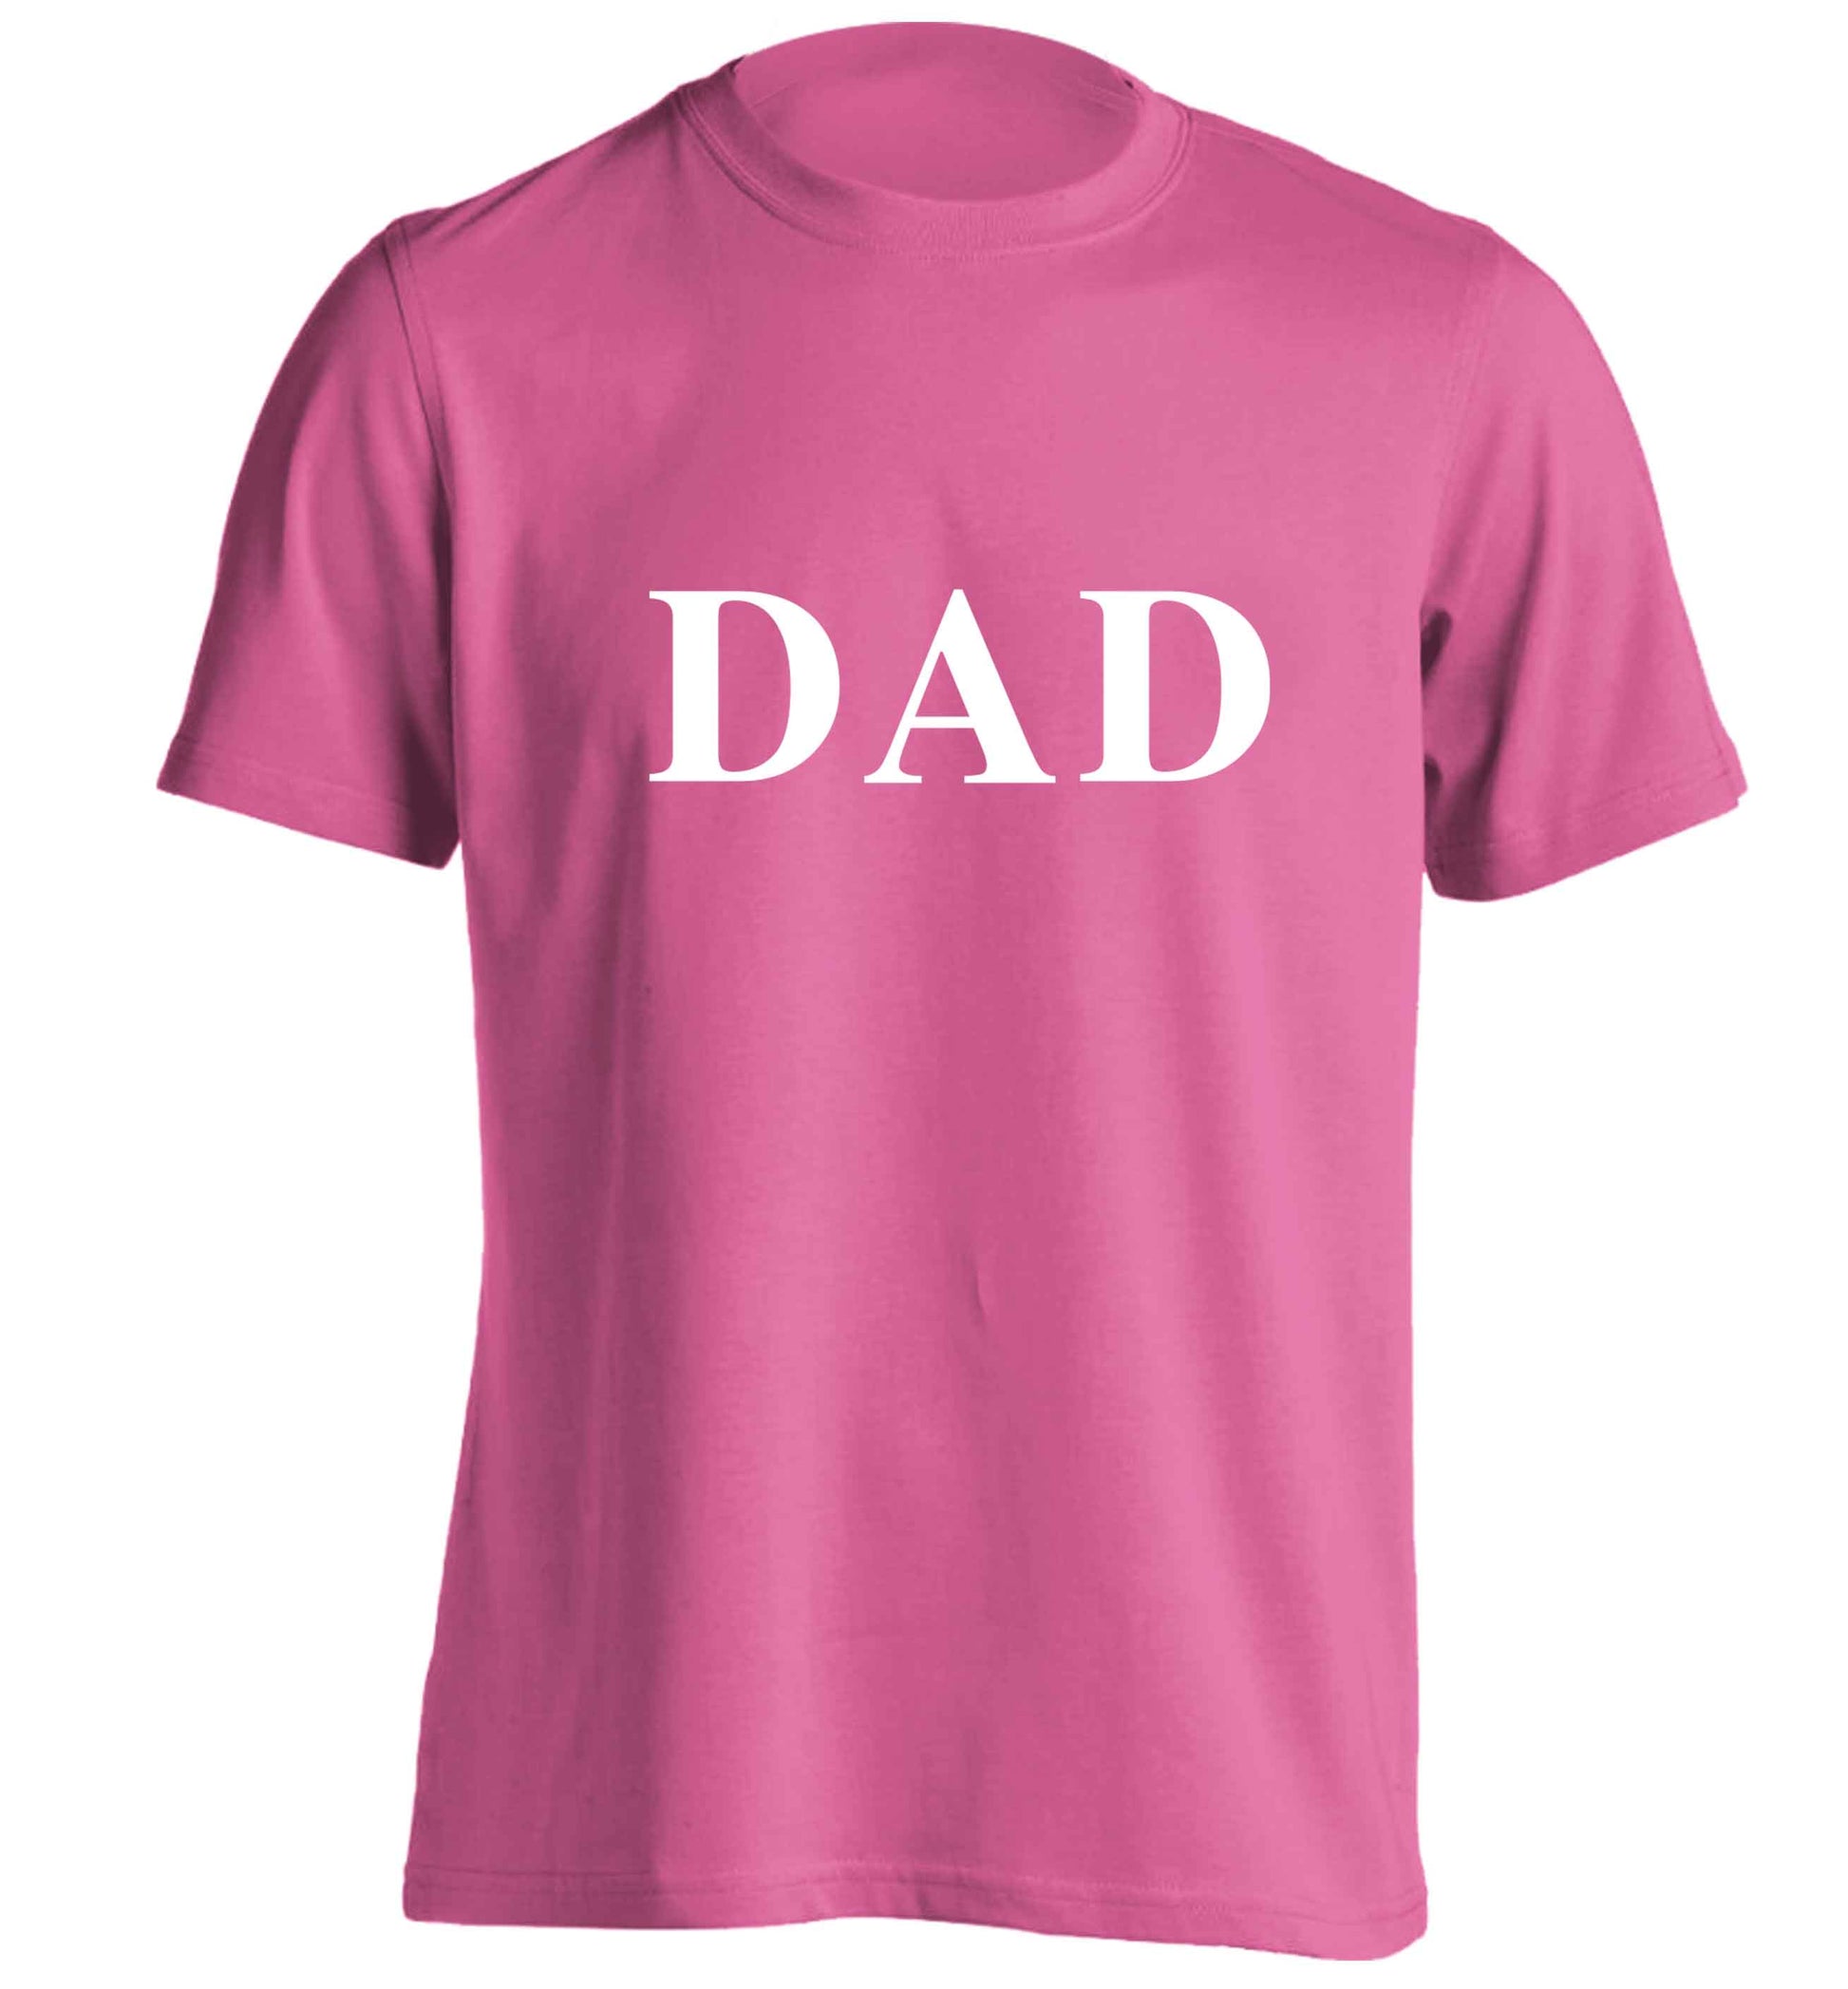 Dad adults unisex pink Tshirt 2XL